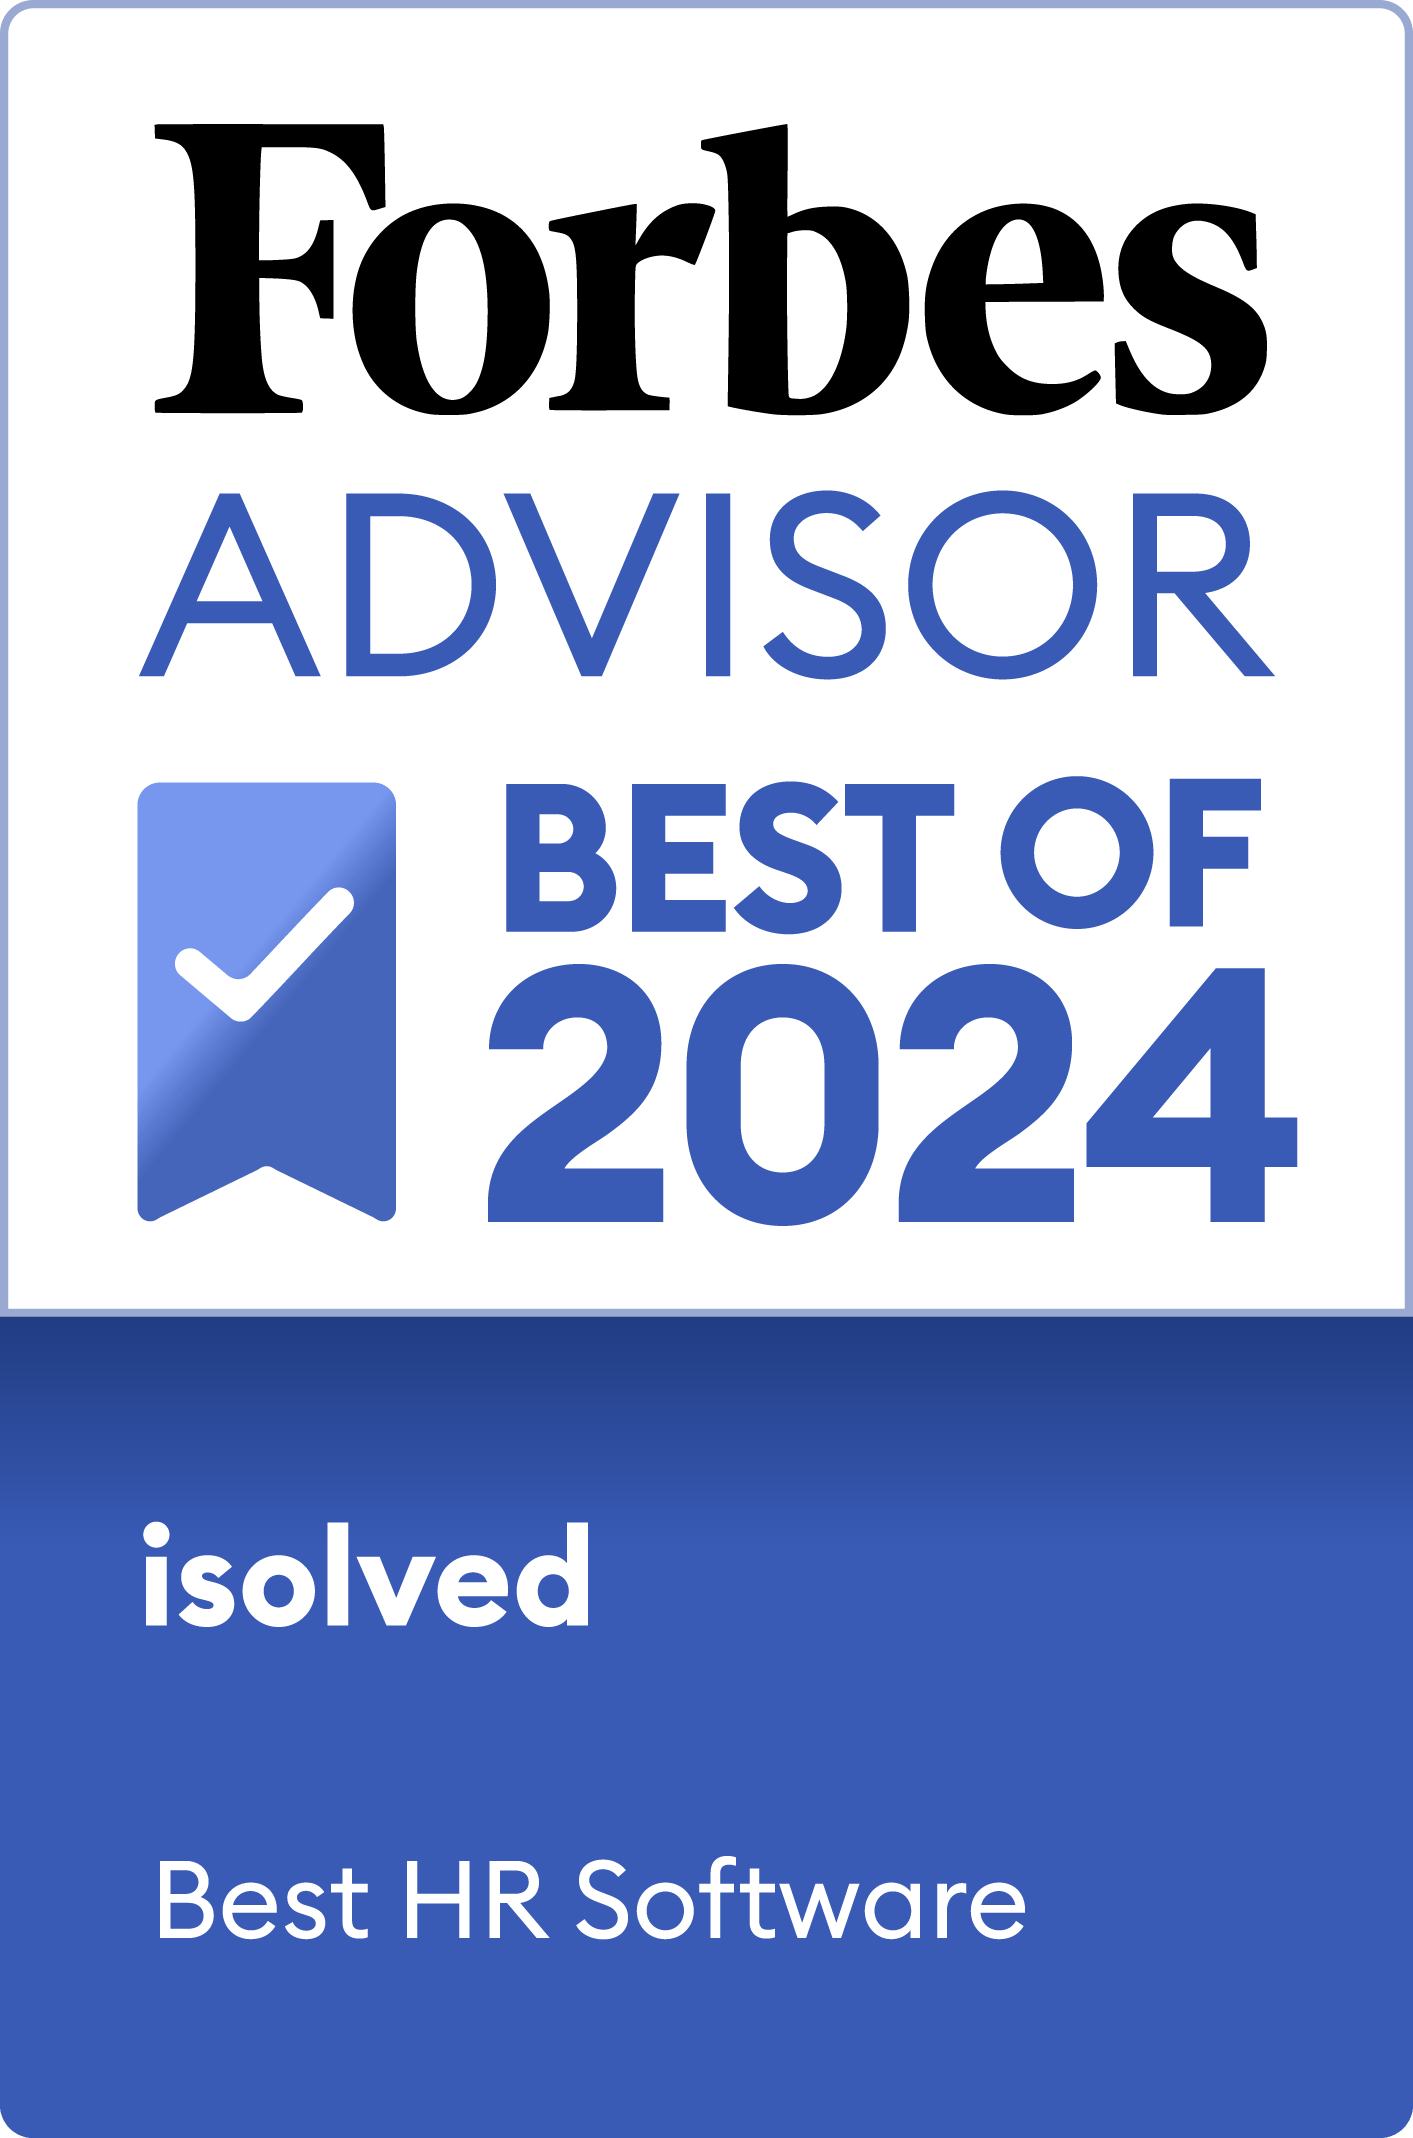 Forbes Advisor Best of 2024